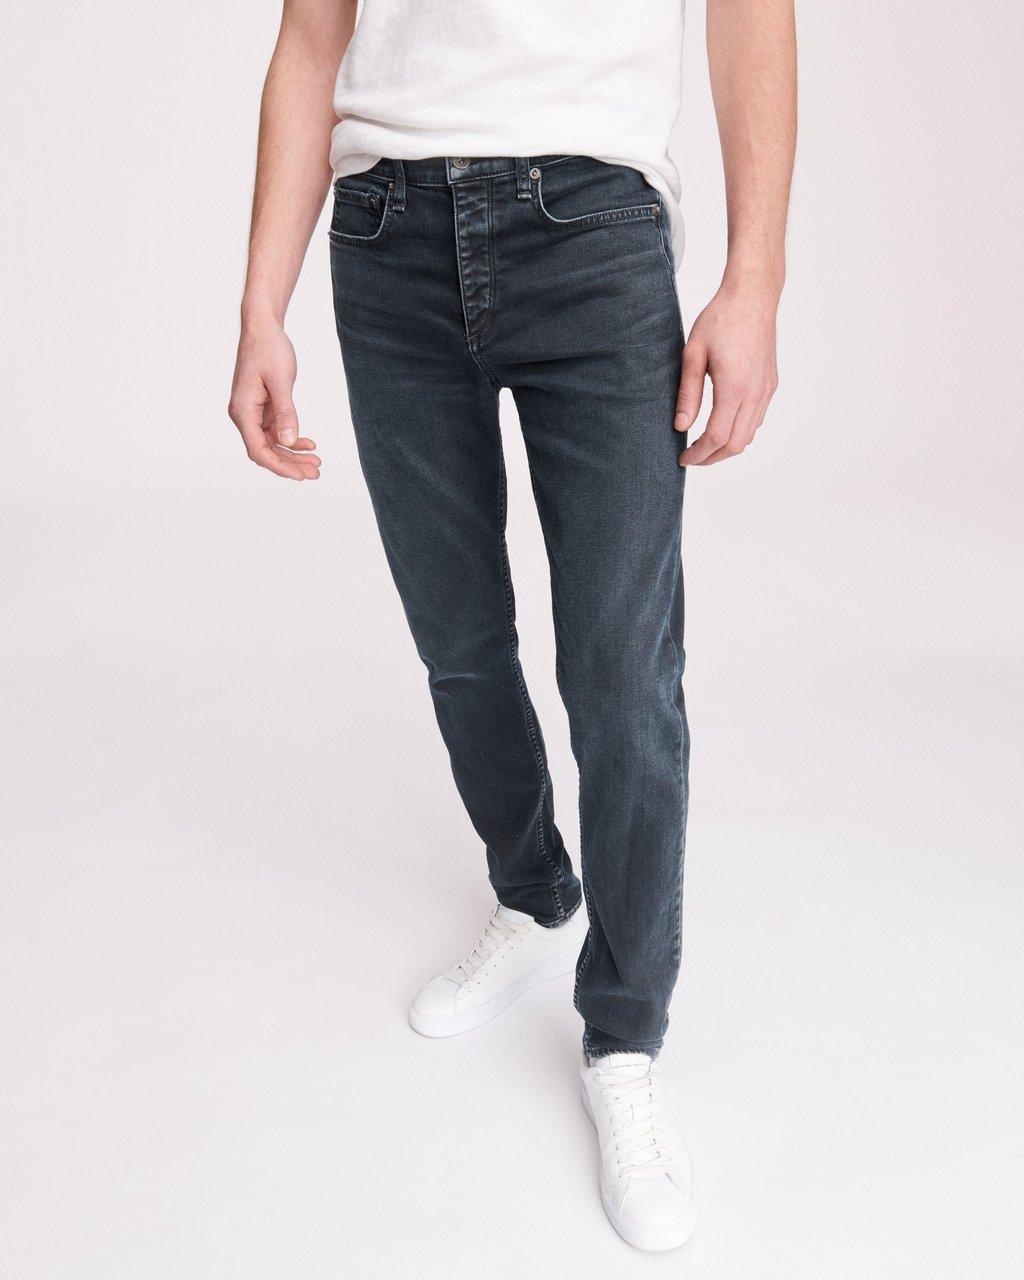 優れた品質 Rag  Bone ラグボーン ファッション ジーンズ Rag  Bone Mens Fit 1 Navy Distressed  Skinny Denim Slim Jeans 36 売れ筋商品-css.edu.om